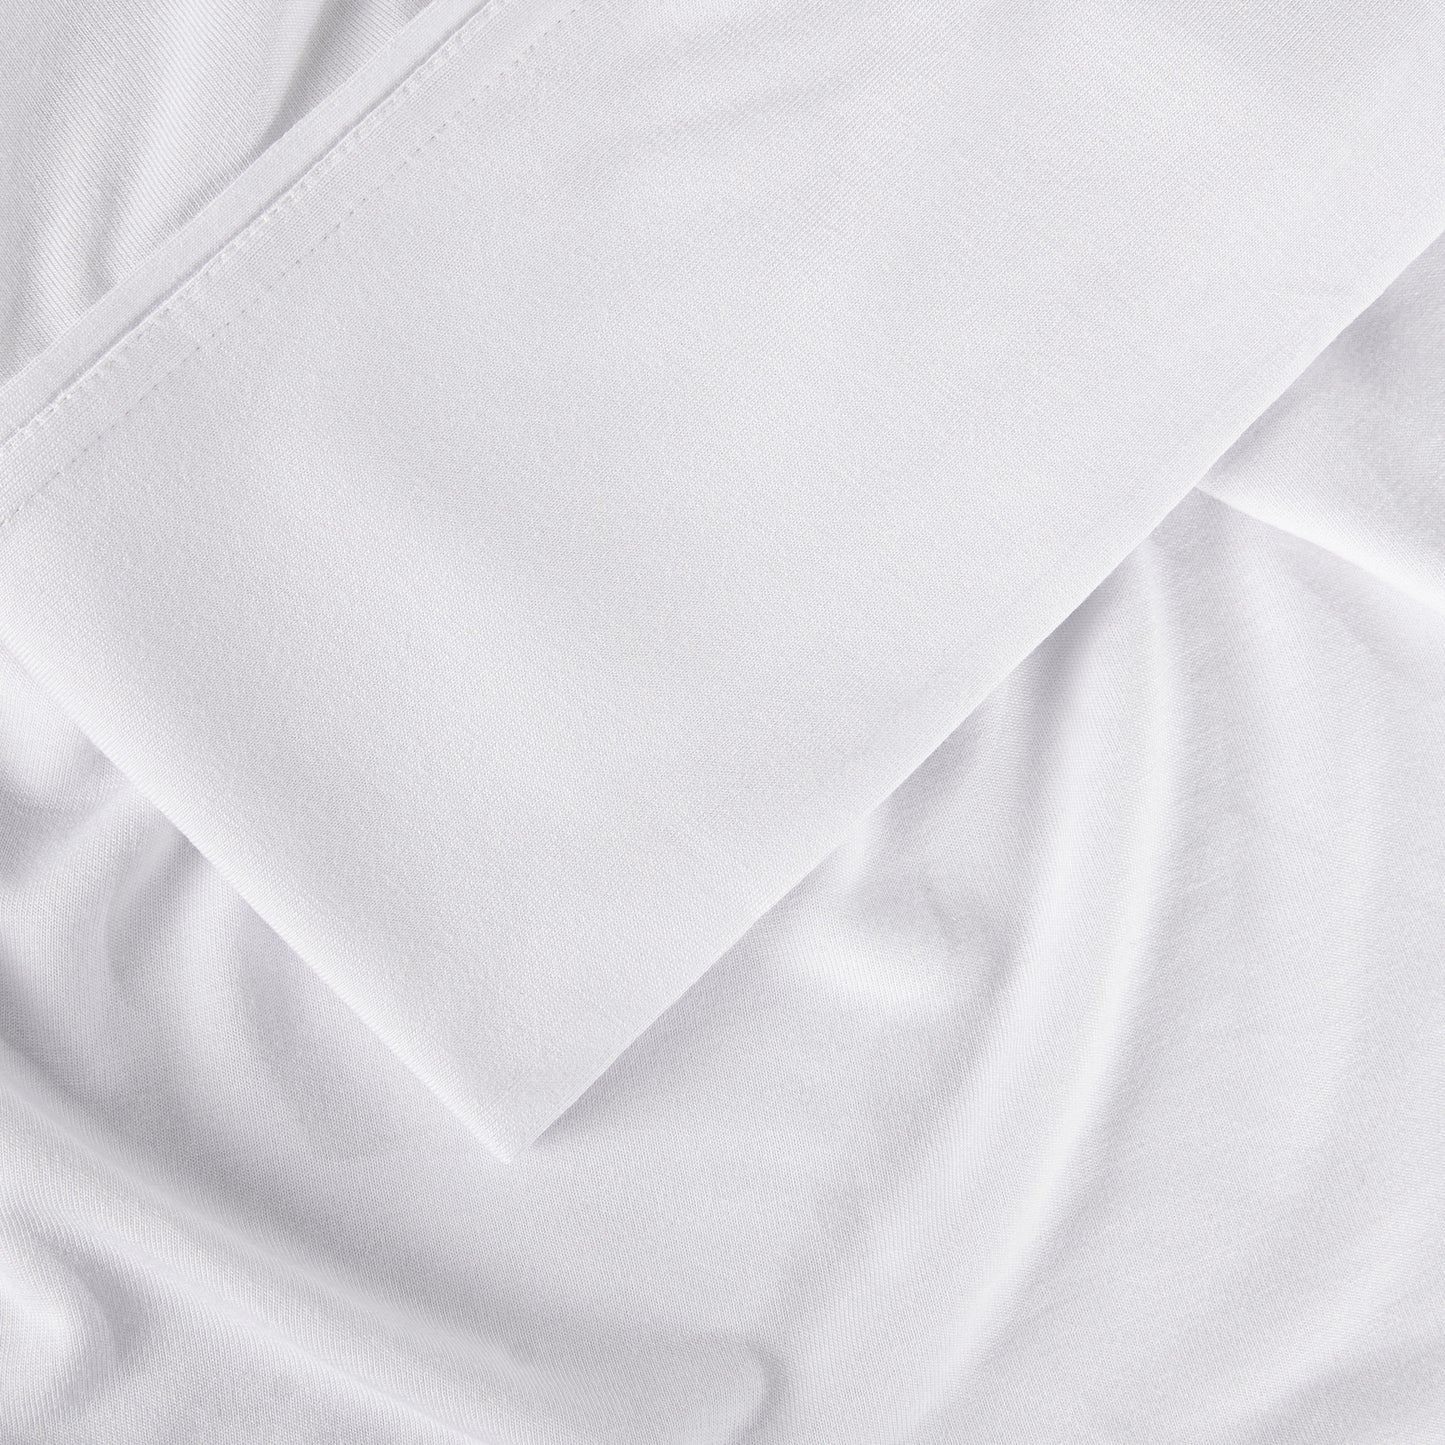 Bedgear Hyper-Wool Sheet Set - Image 27